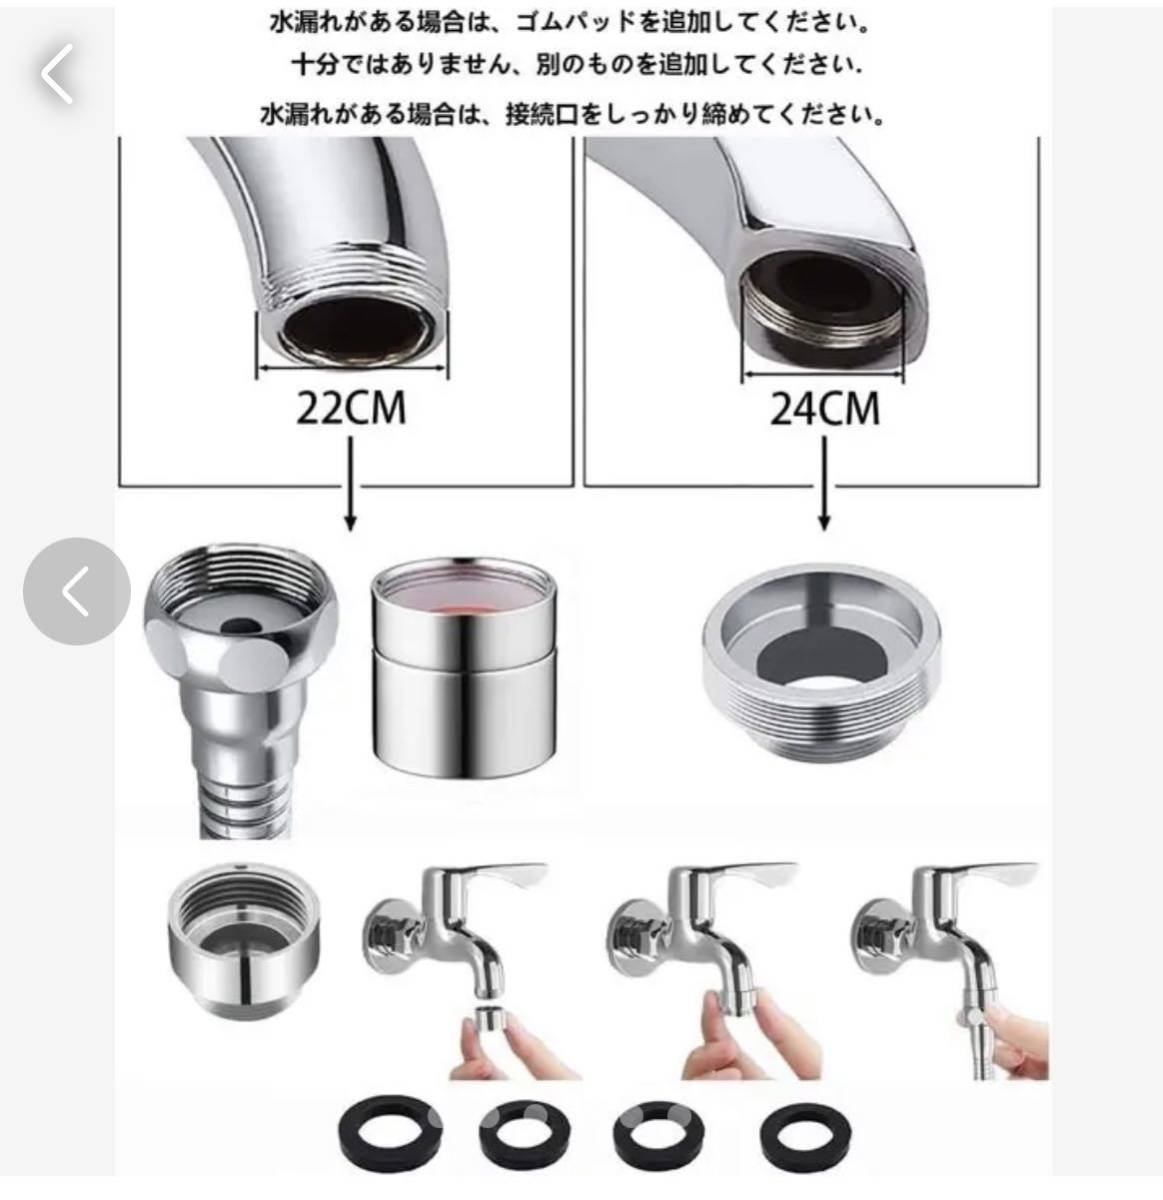 蛇口 シャワー アダプター付 節水30% ステンレス真鍮製 (32CM)_画像7